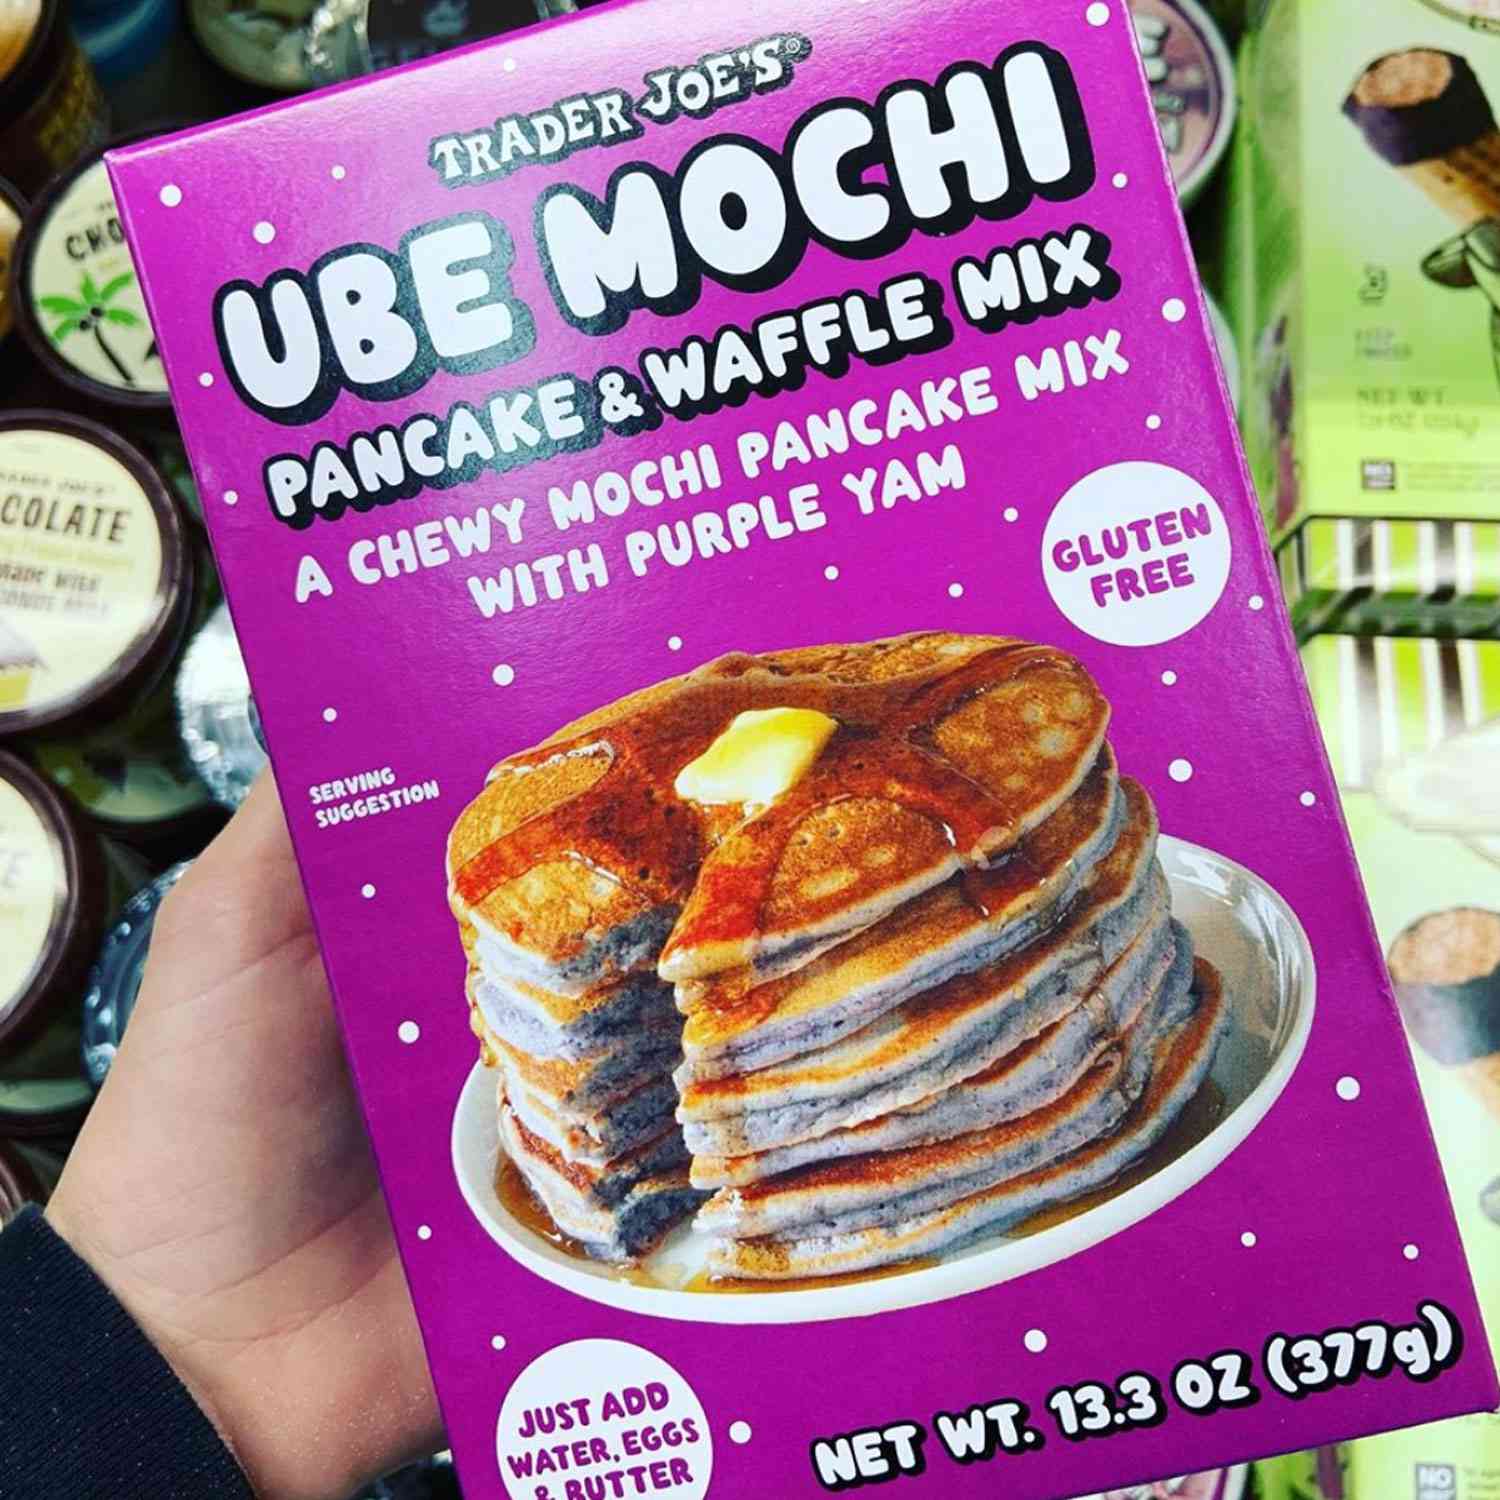 Trader Joe's ube pancake mix